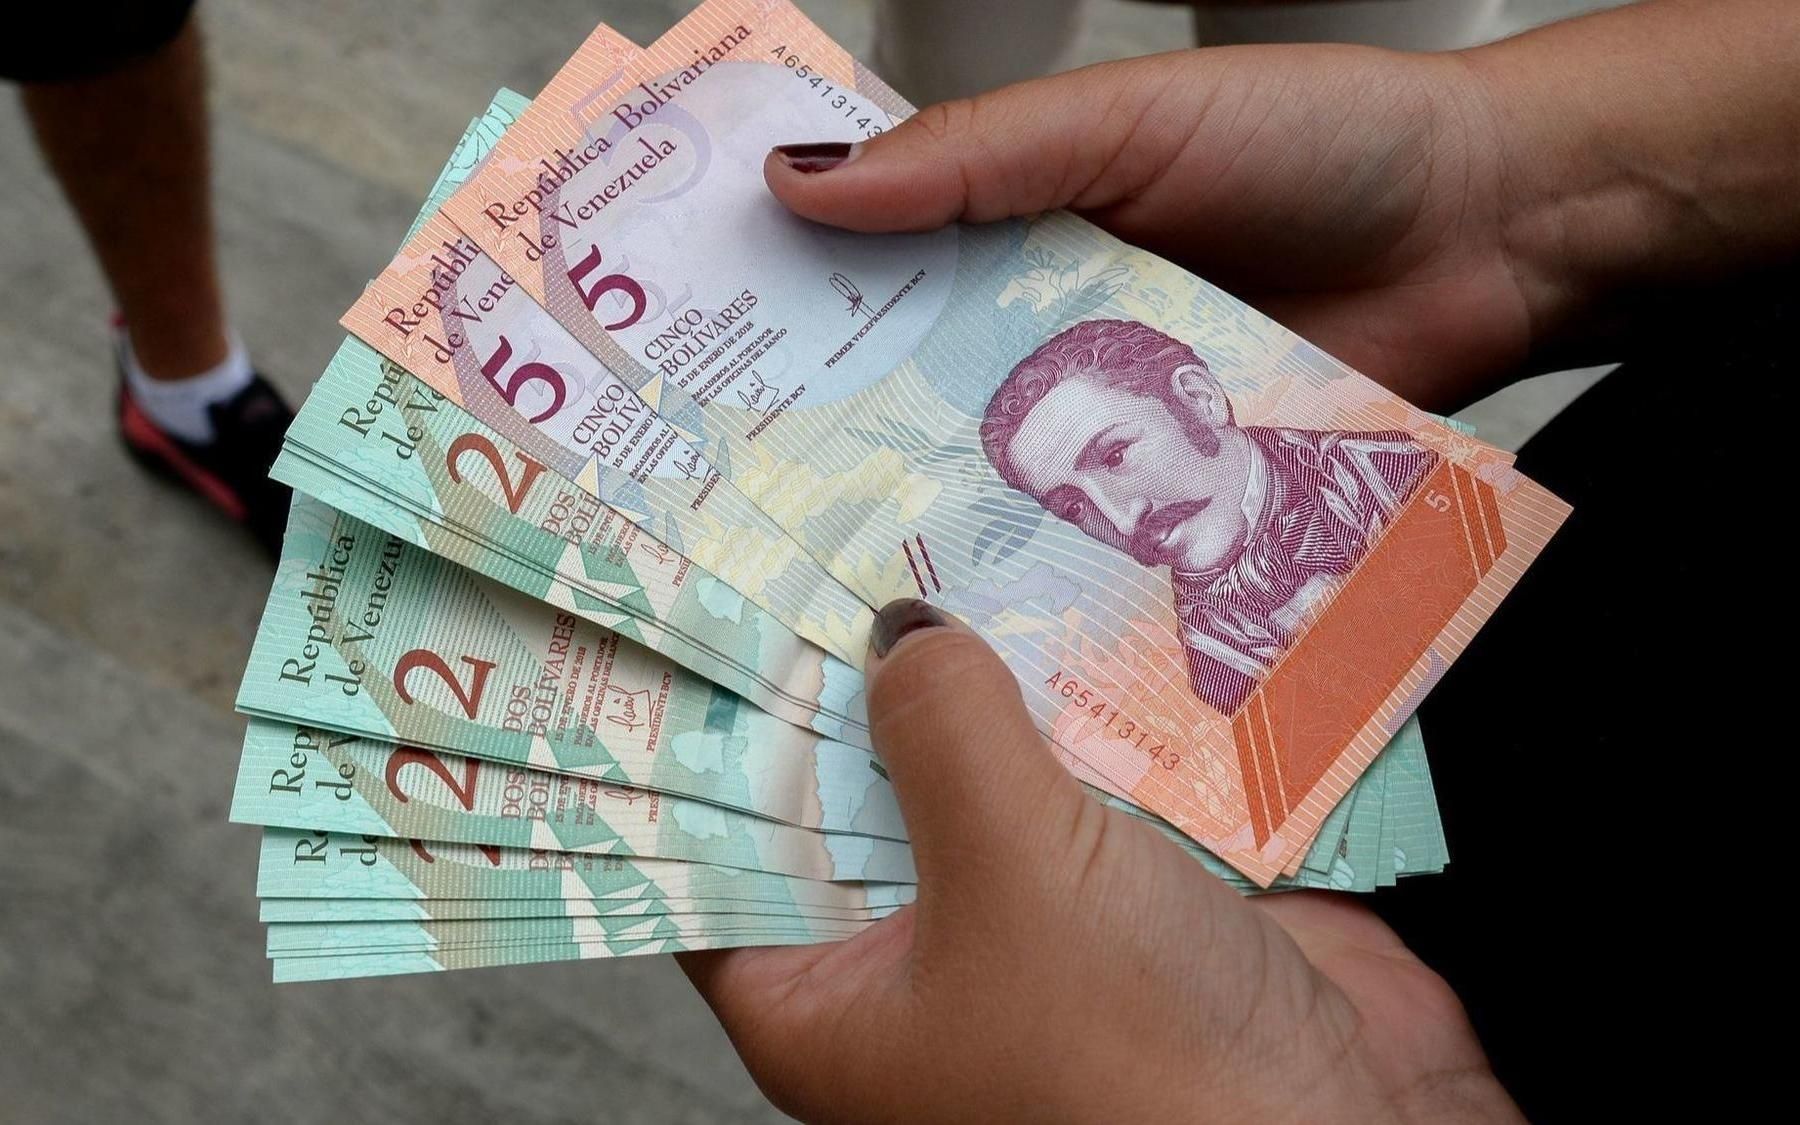 Escasez de efectivo se acentúa y amenaza con desaparecer billetes de 2, 5 y 10 bolívares